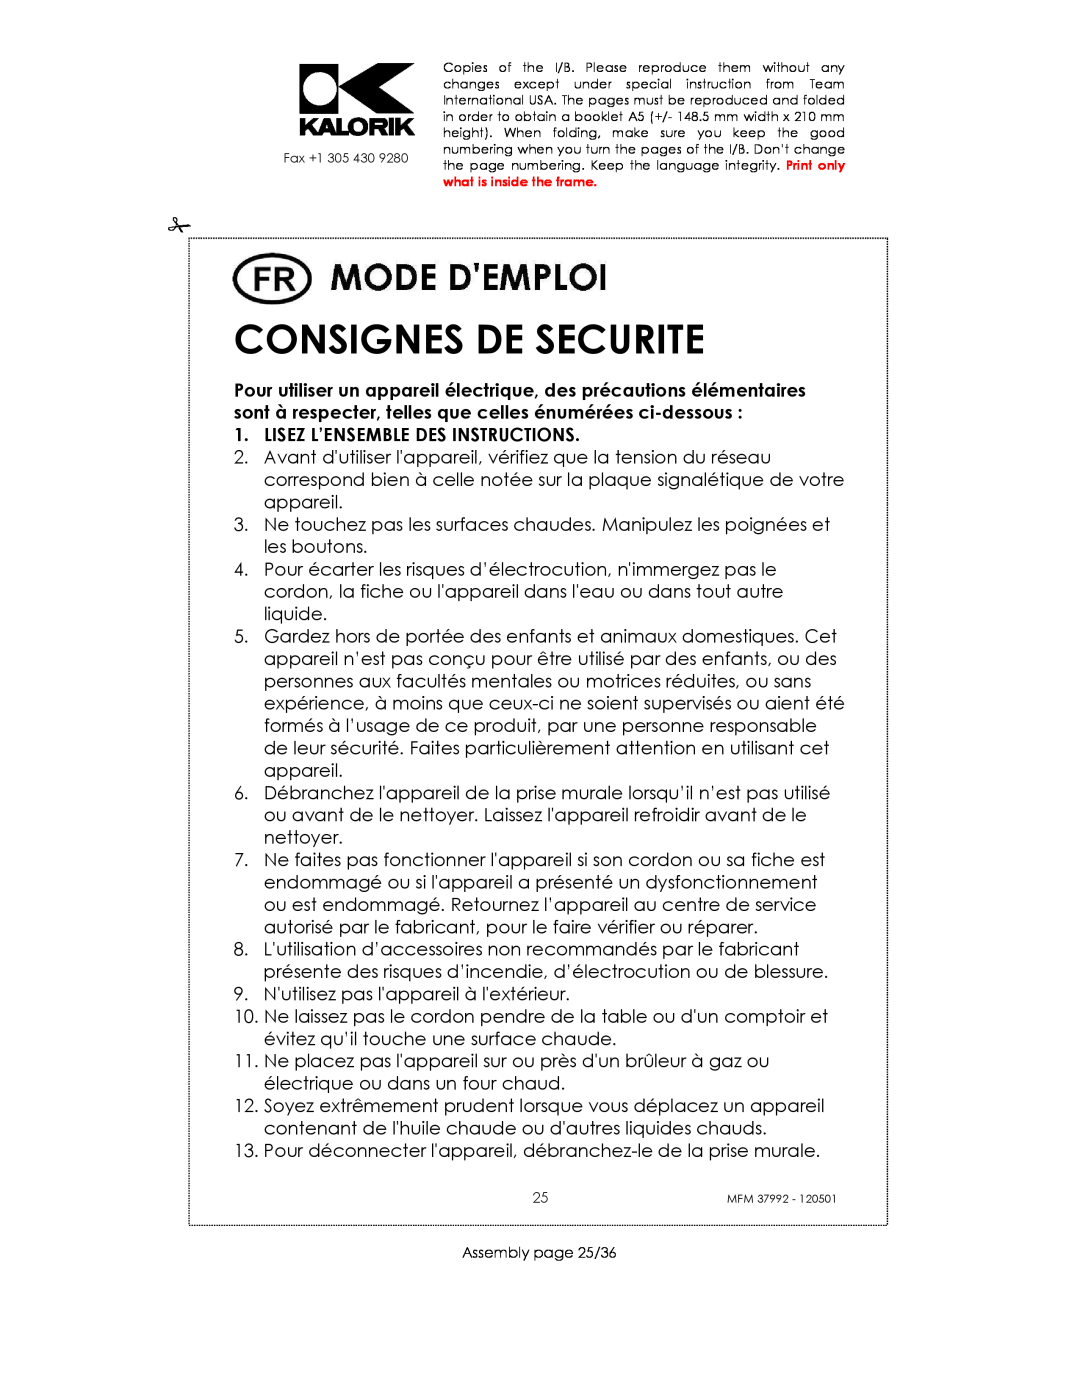 Kalorik MFM 37992 manual Consignes De Securite, Lisez L’Ensemble Des Instructions 